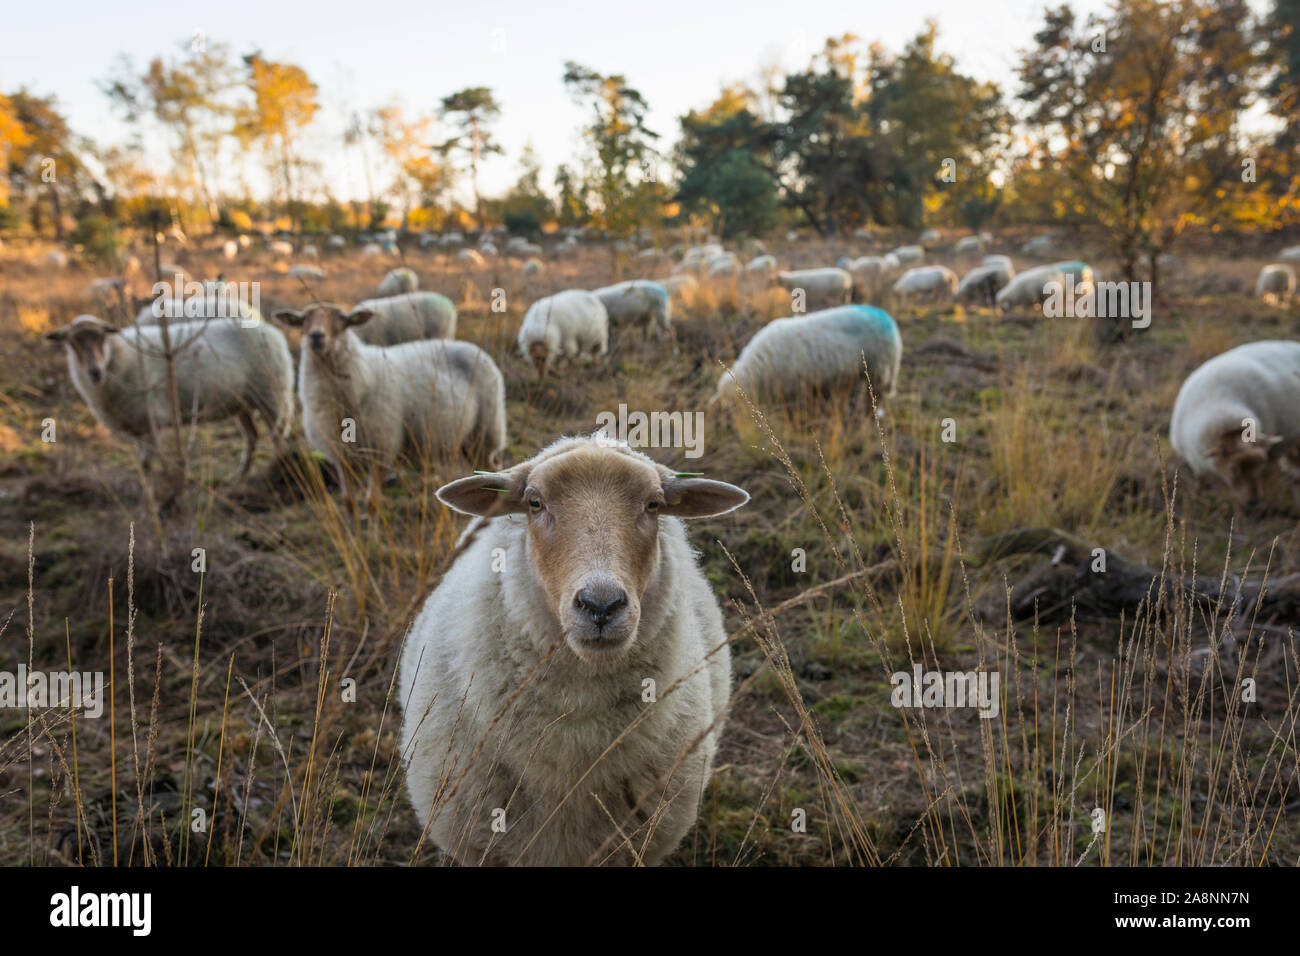 Flock of 'Kempisch Heideschaap' sheep at nature reserve 'Strabrechtse Heide' in the Netherlands Stock Photo